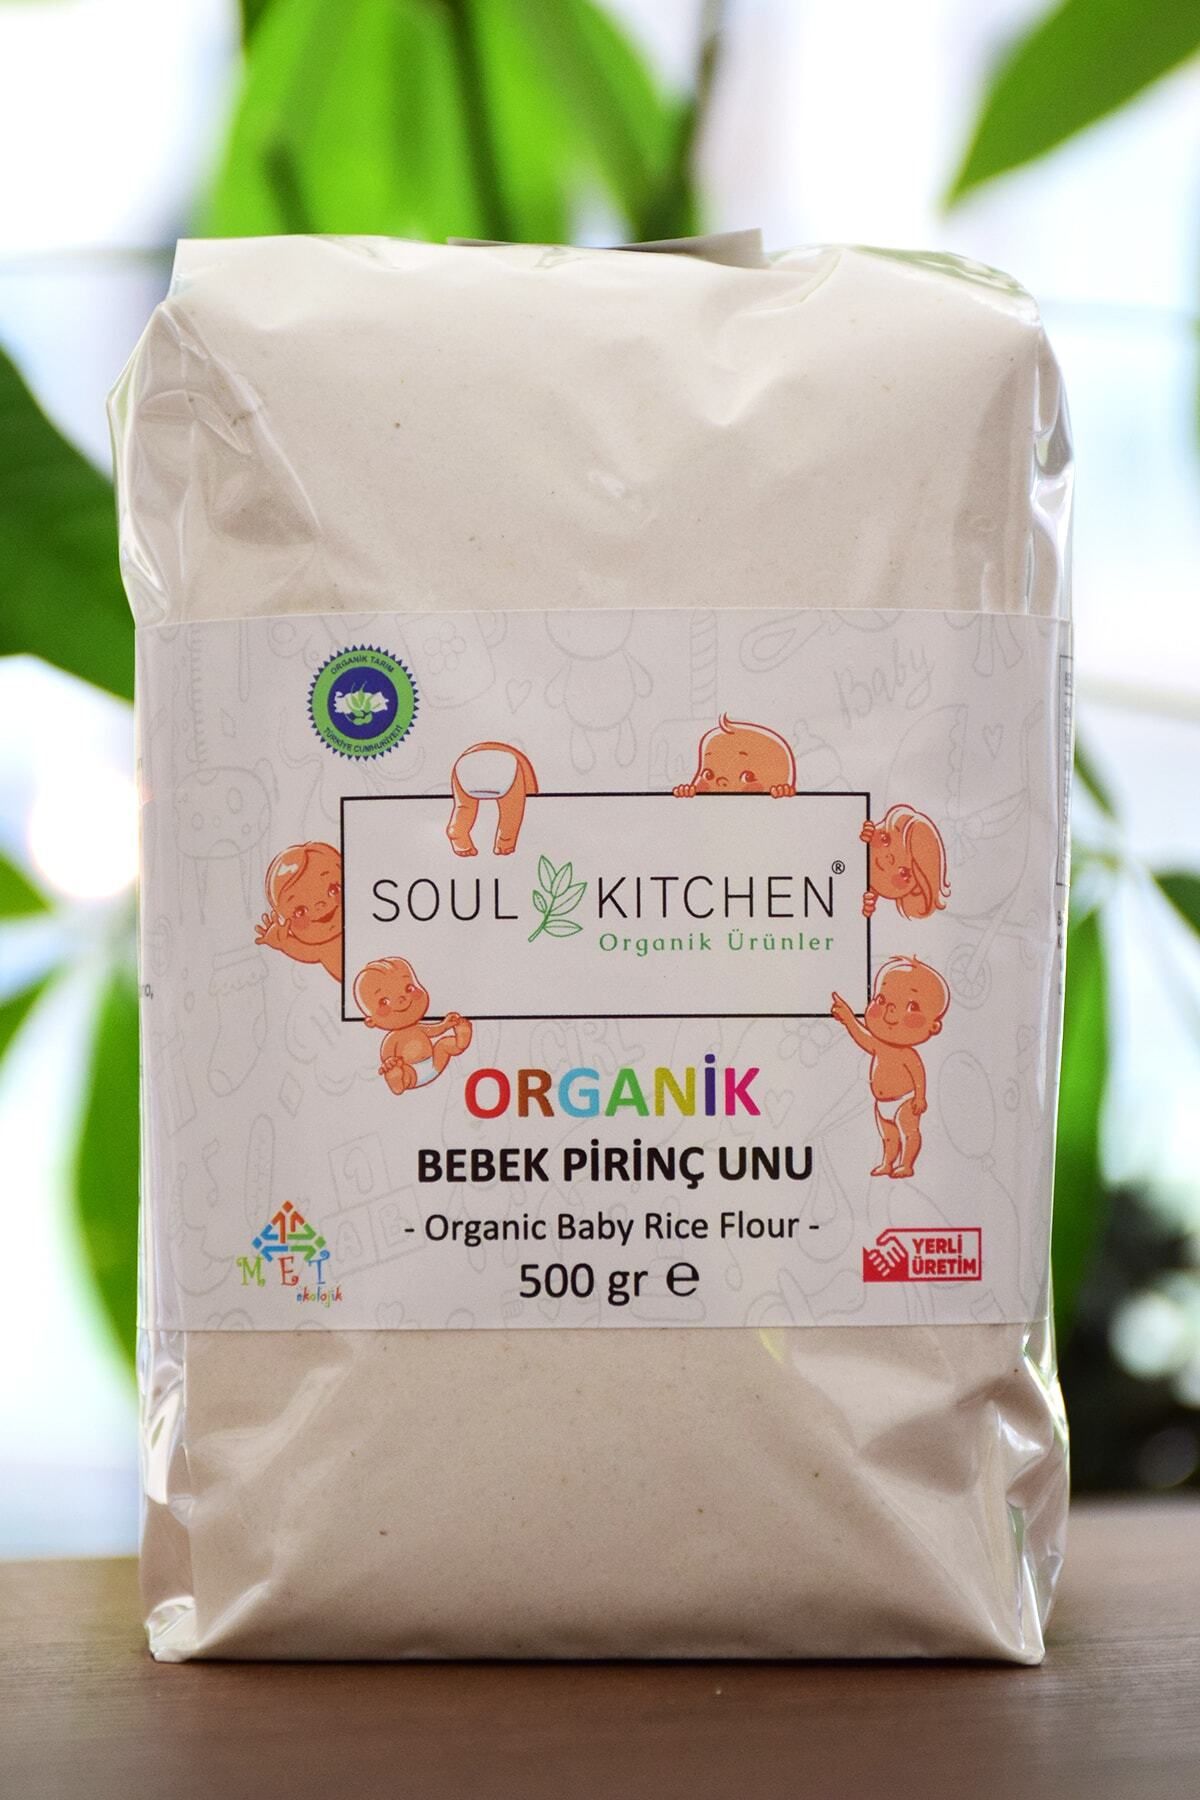 Soul Kitchen Organik Ürünler 6ay Organik Bebek Pirinç Unu 500gr-sertifikalı Organik